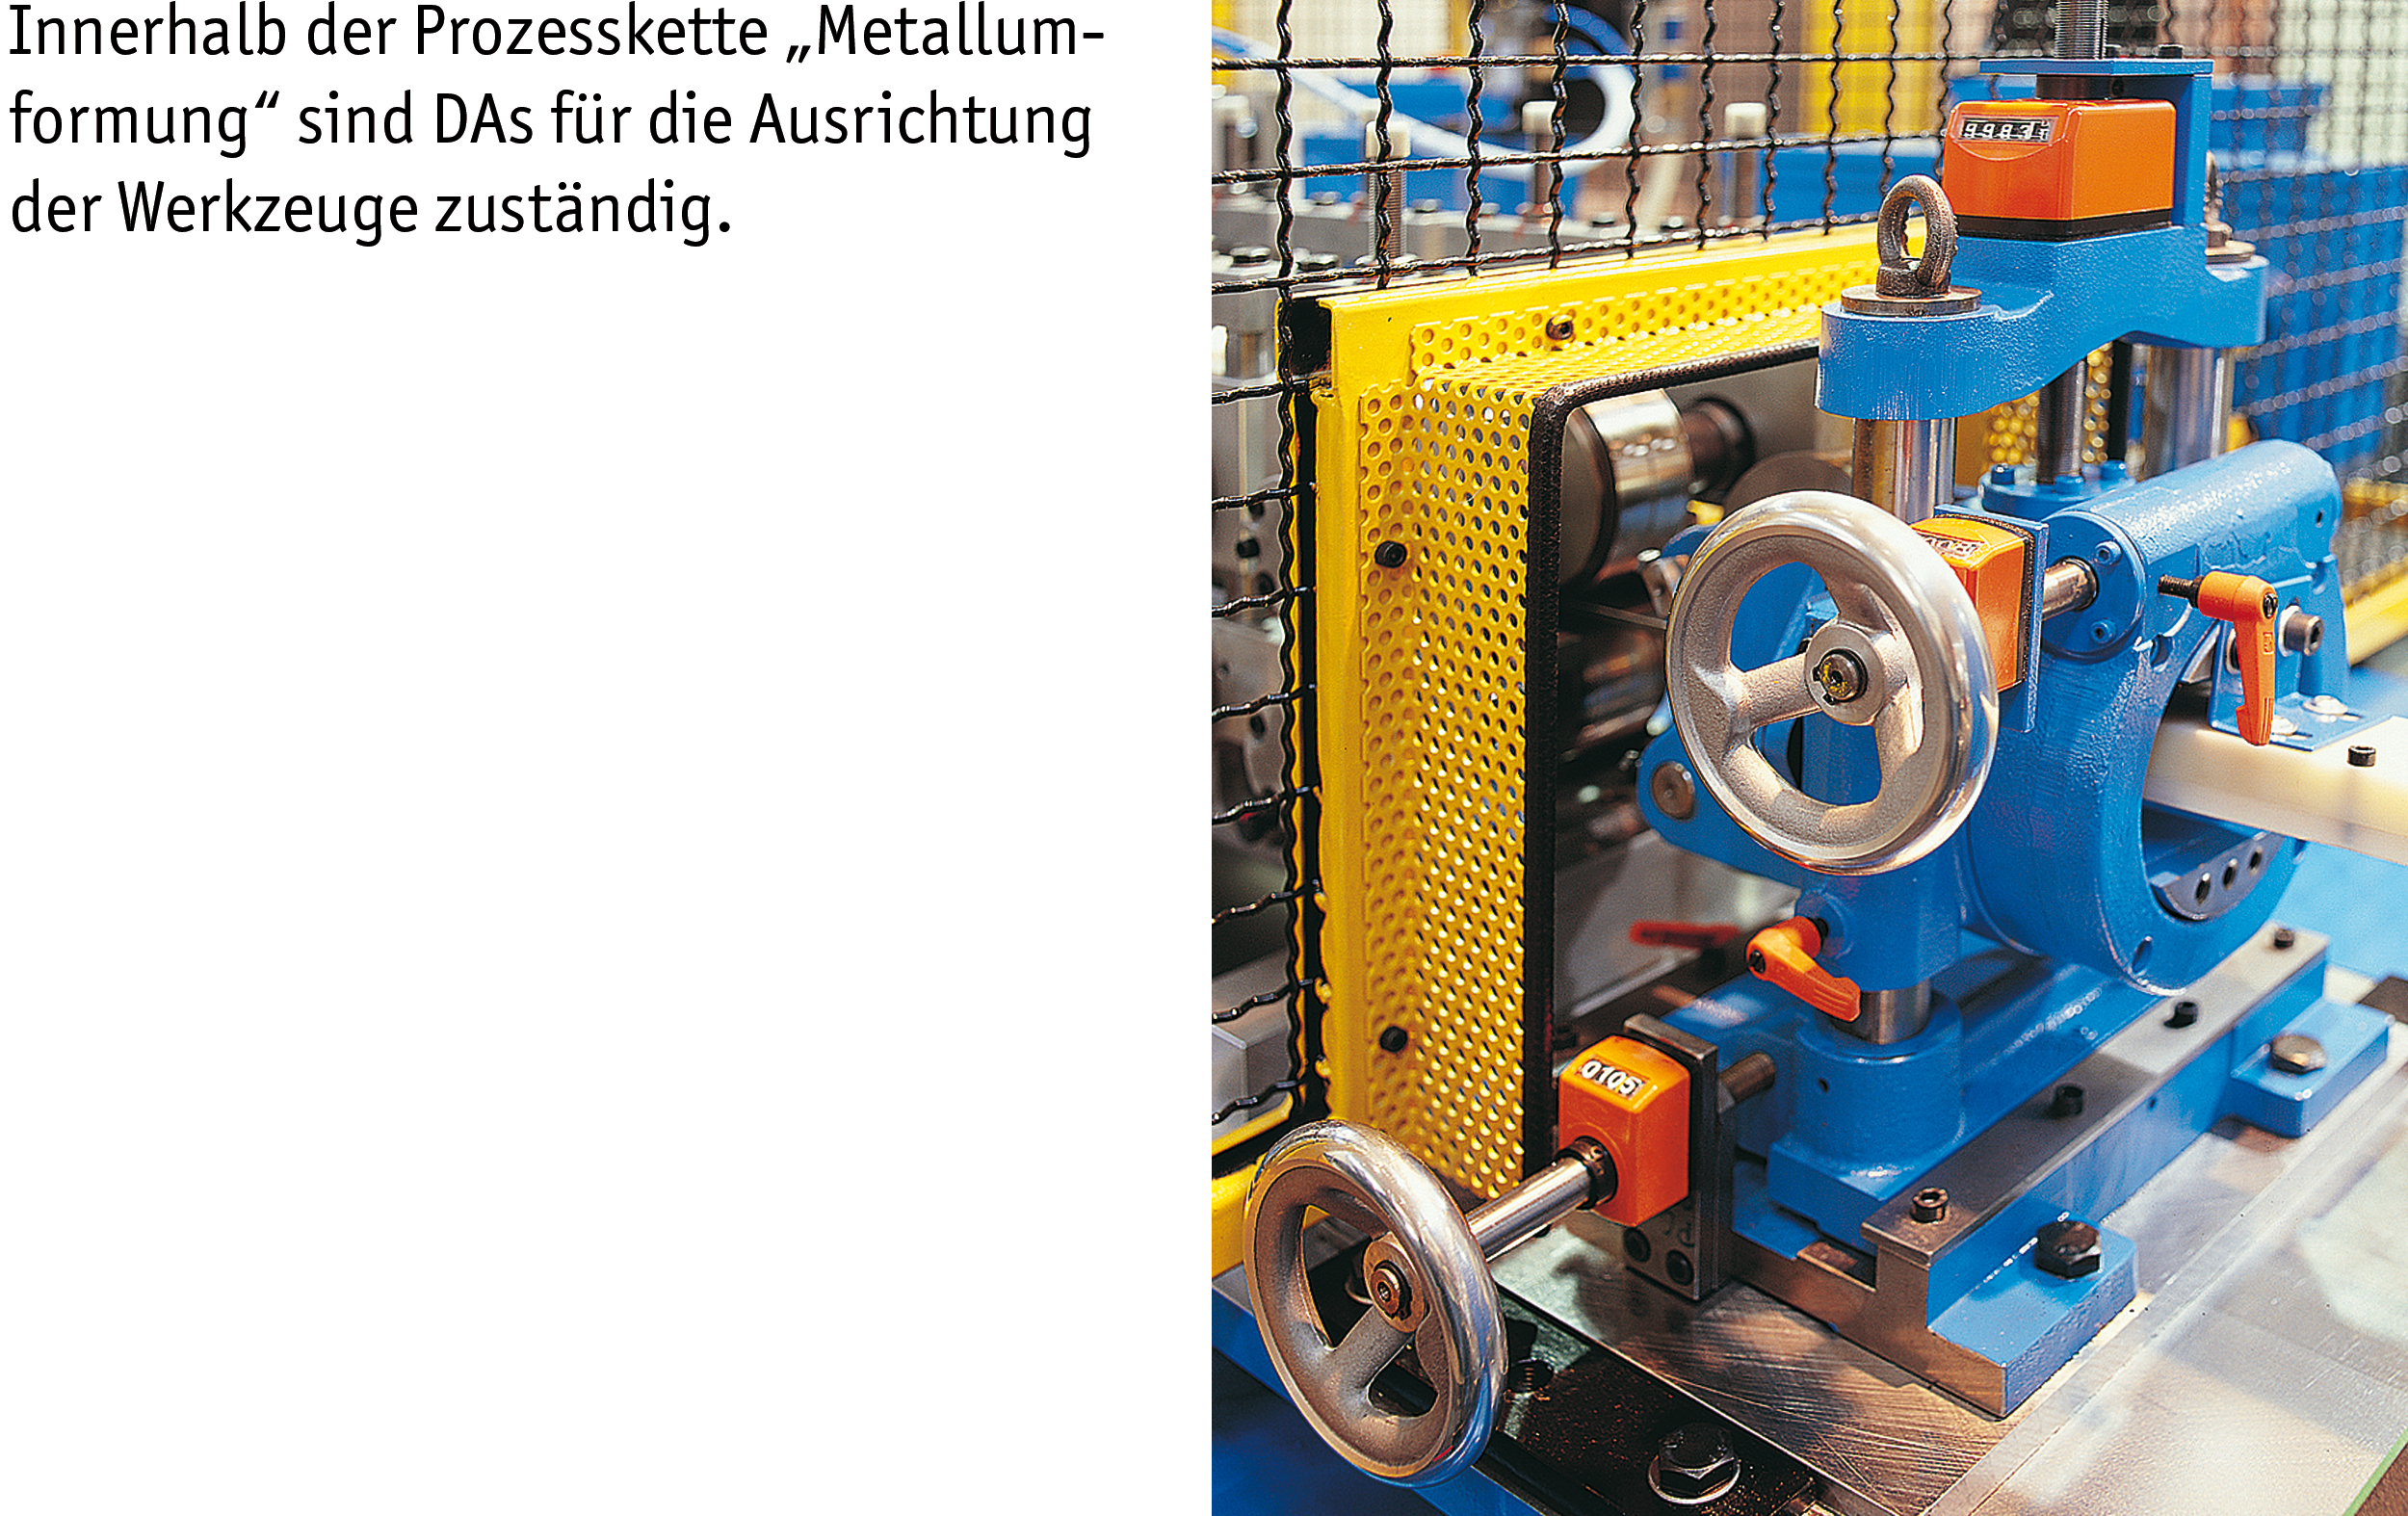 SIKO Positionsanzeigen des Typs DA09S an einer Produktionsmaschine in der Metallverarbeitung